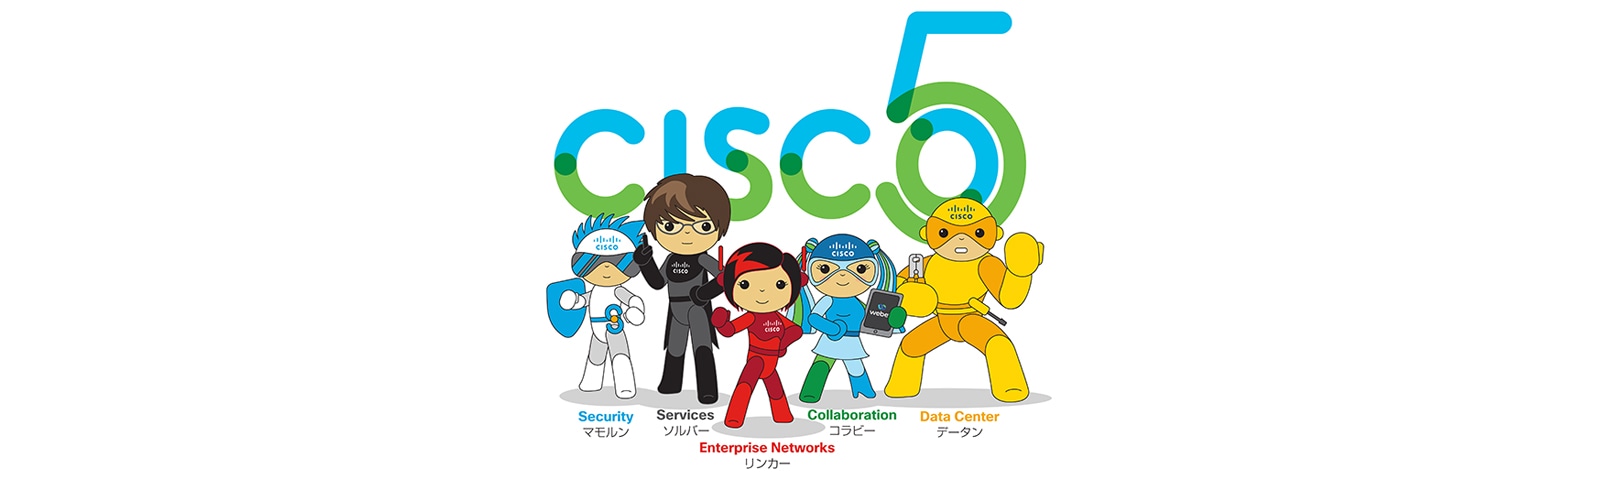 Cisco5